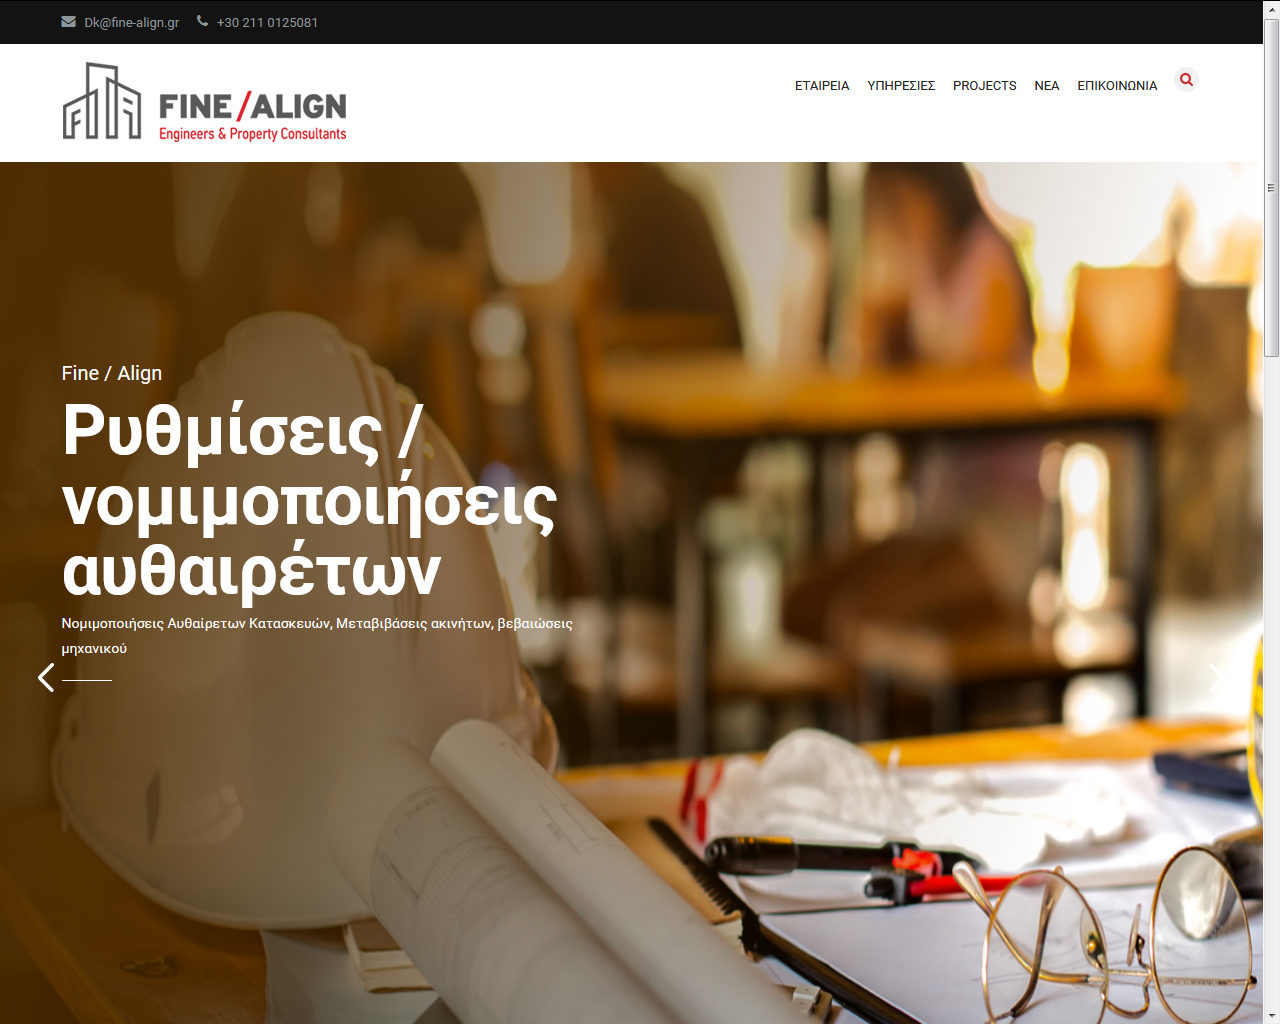 FINE / ALIGN Engineers & Law Consultants website